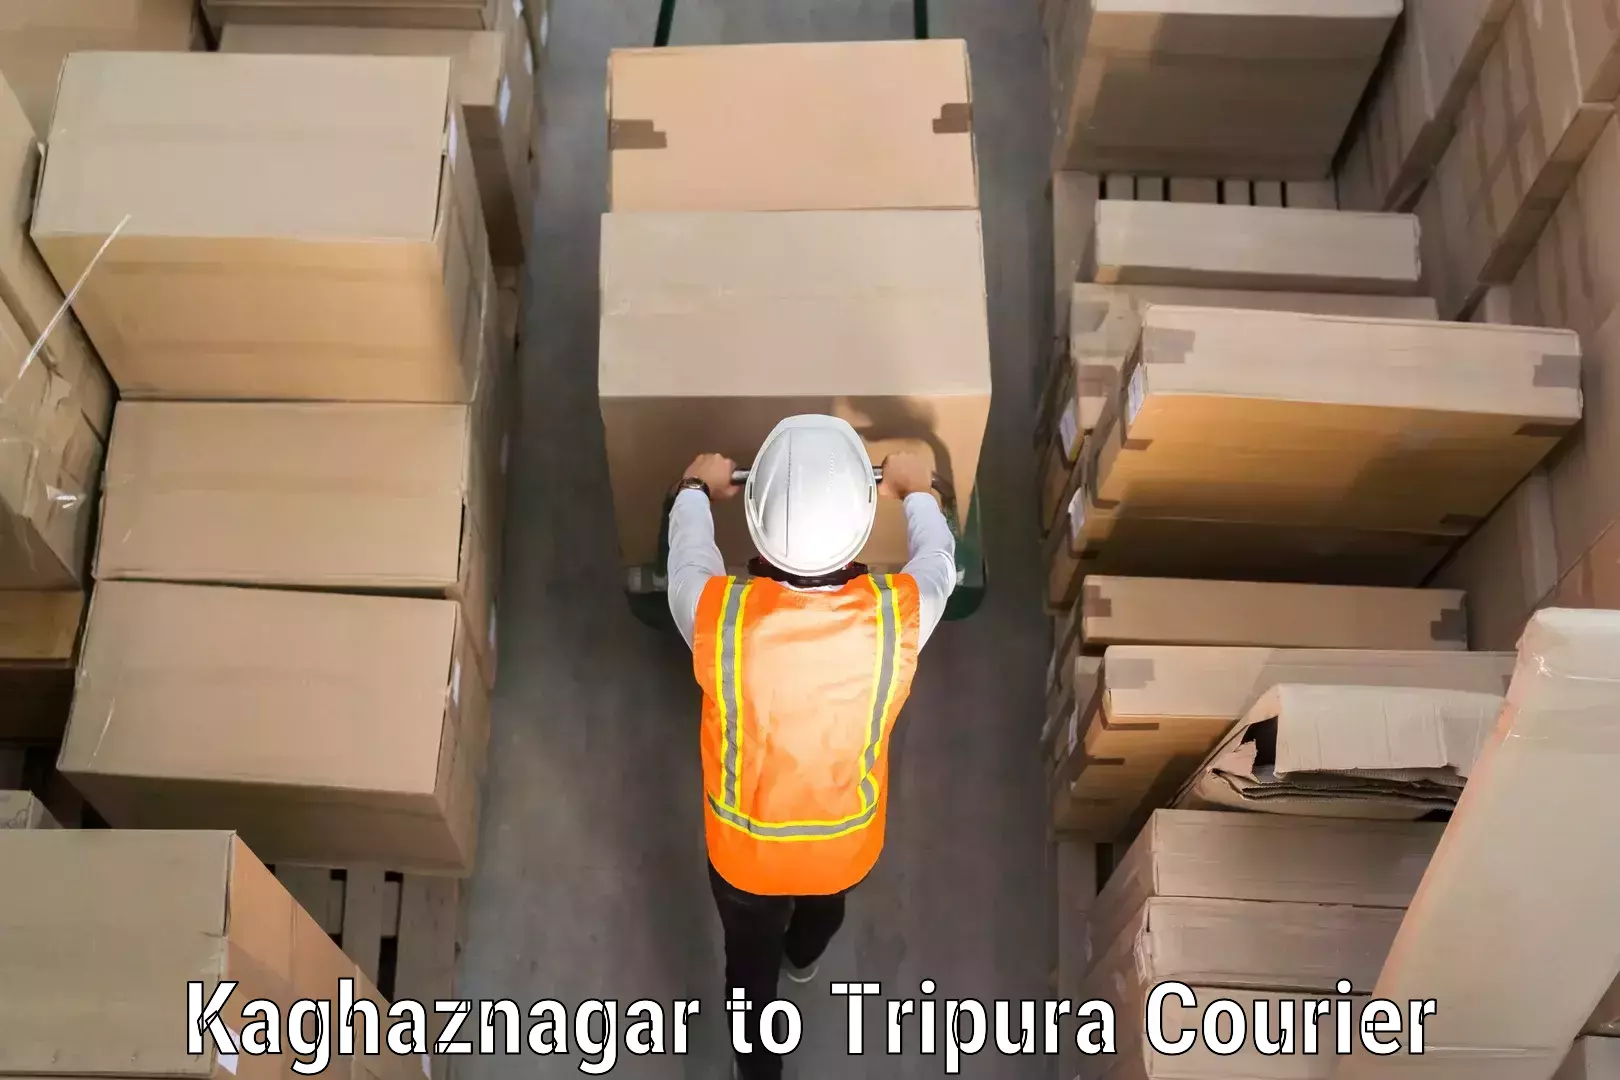 Luggage delivery app Kaghaznagar to Agartala